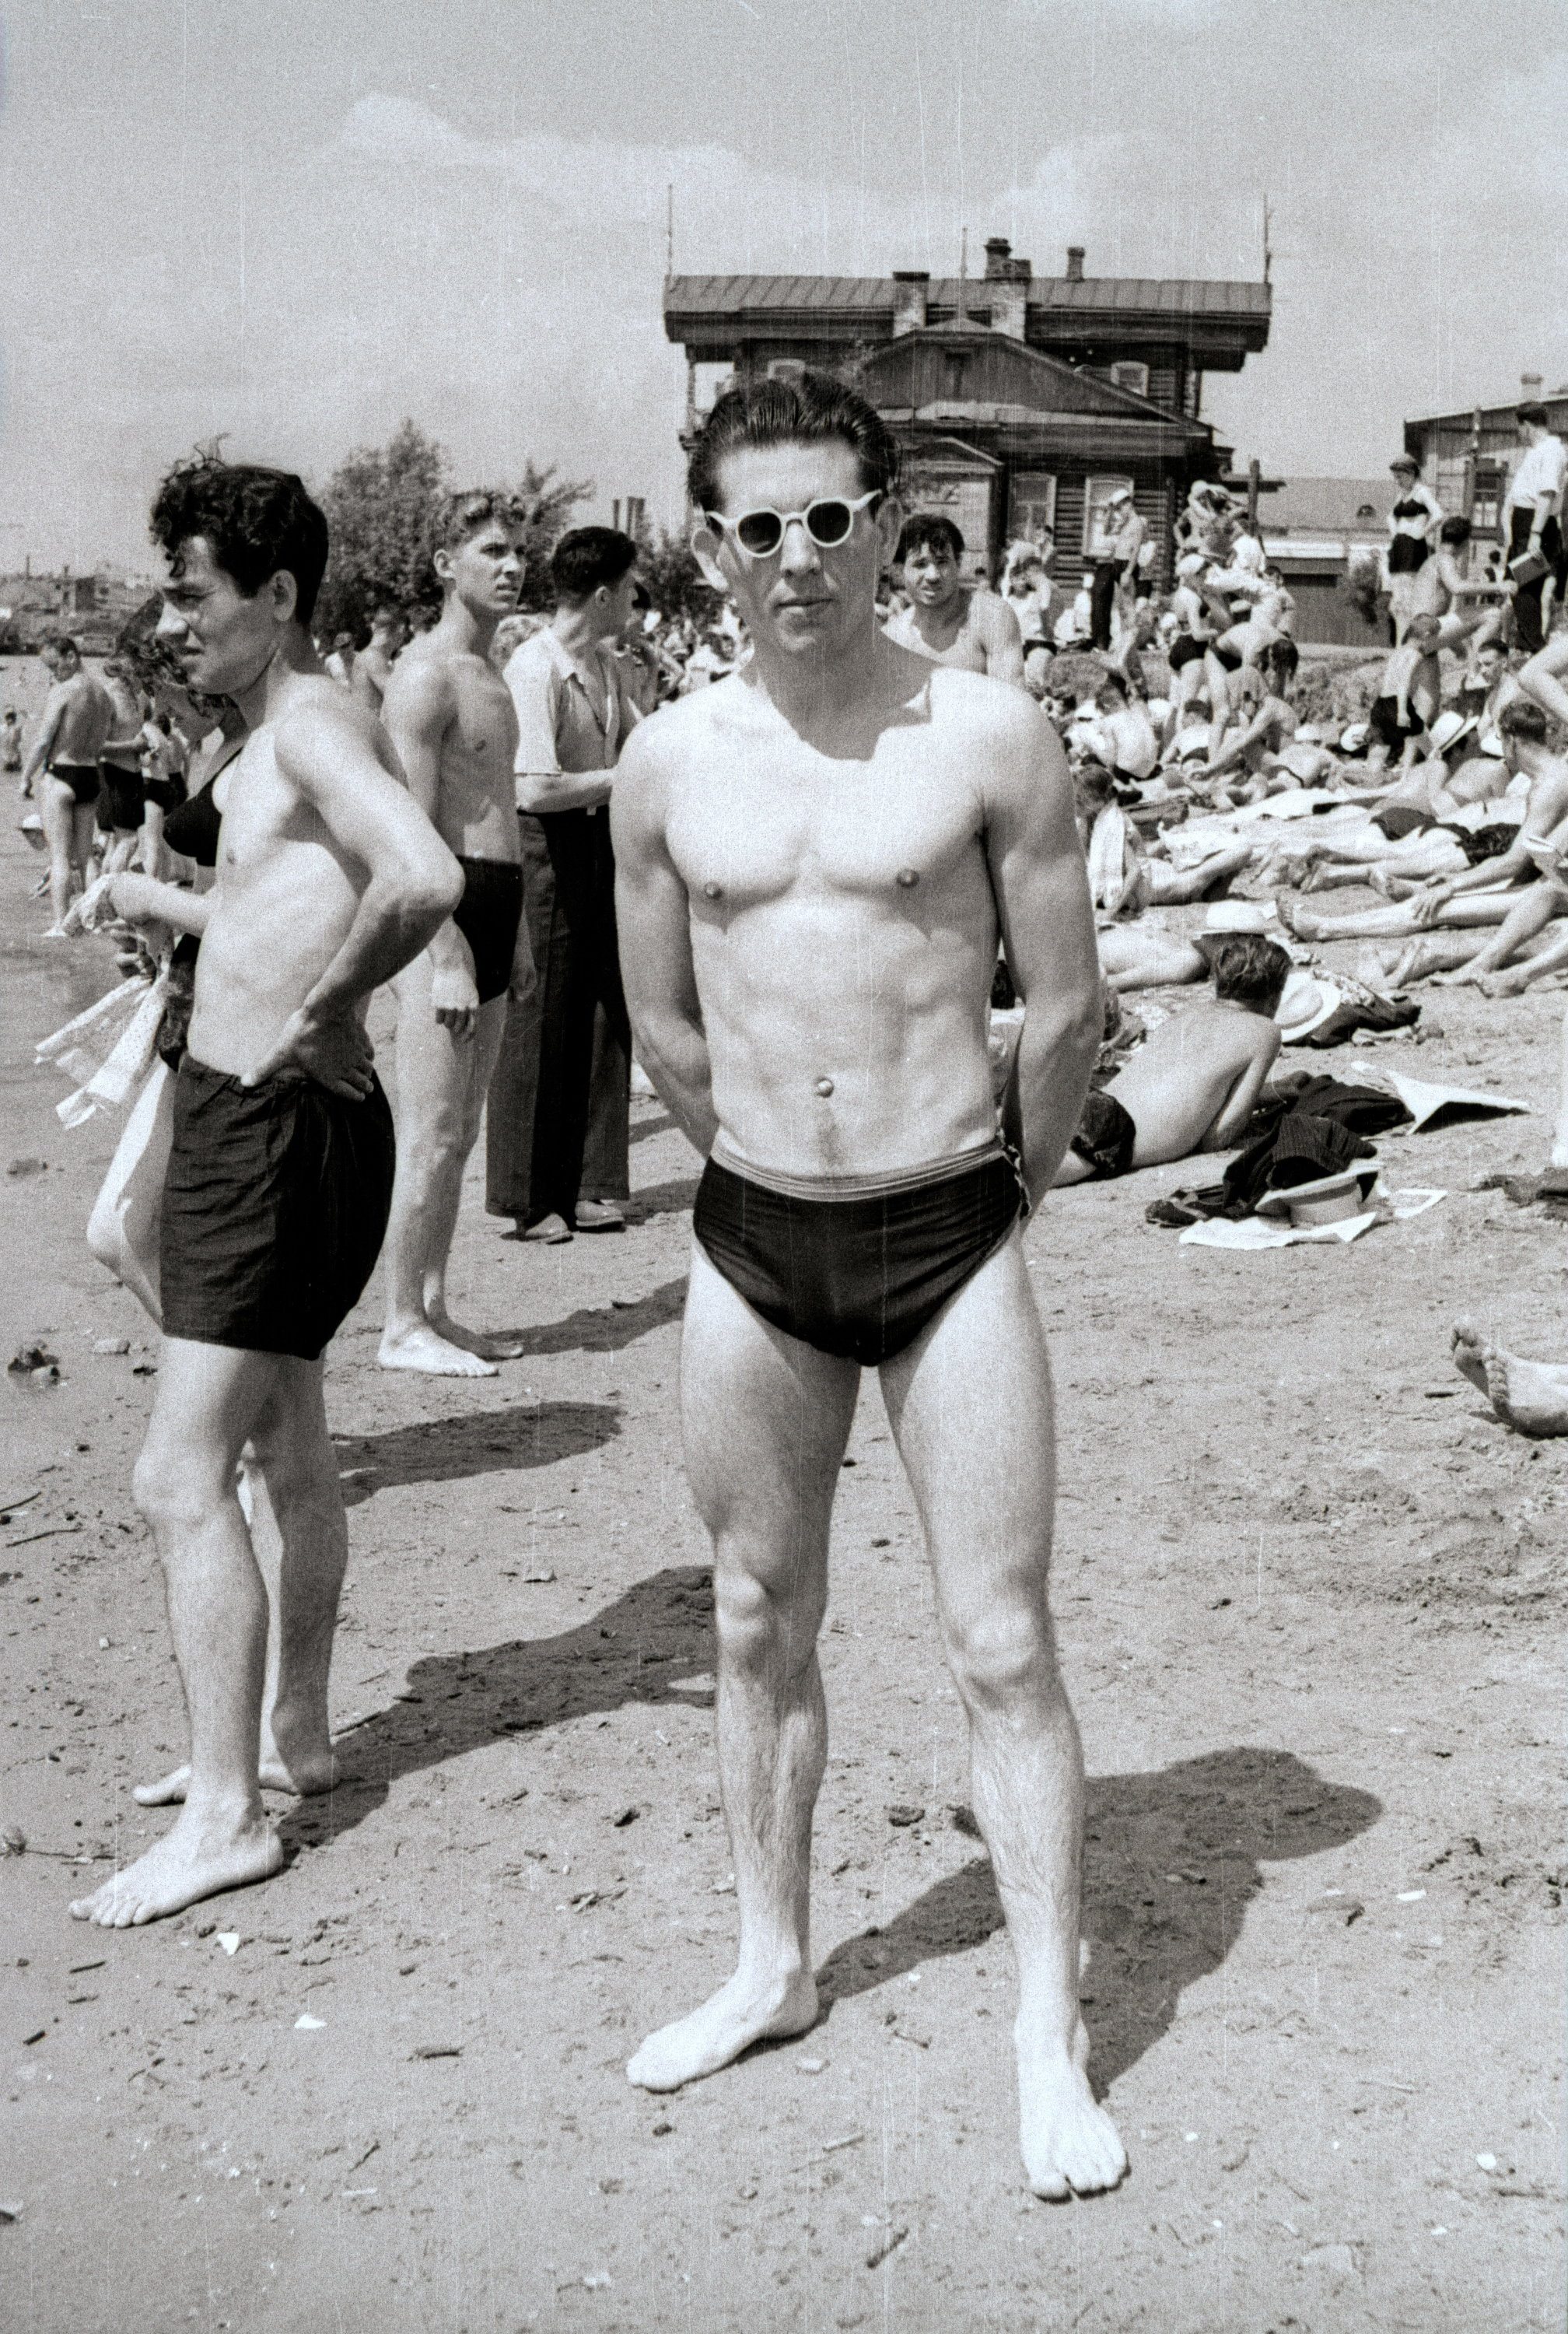 Этот подтянутый парень выглядит очень стильно в своих очках. Фото сделано в 1955 году на Куйбышевском пляже